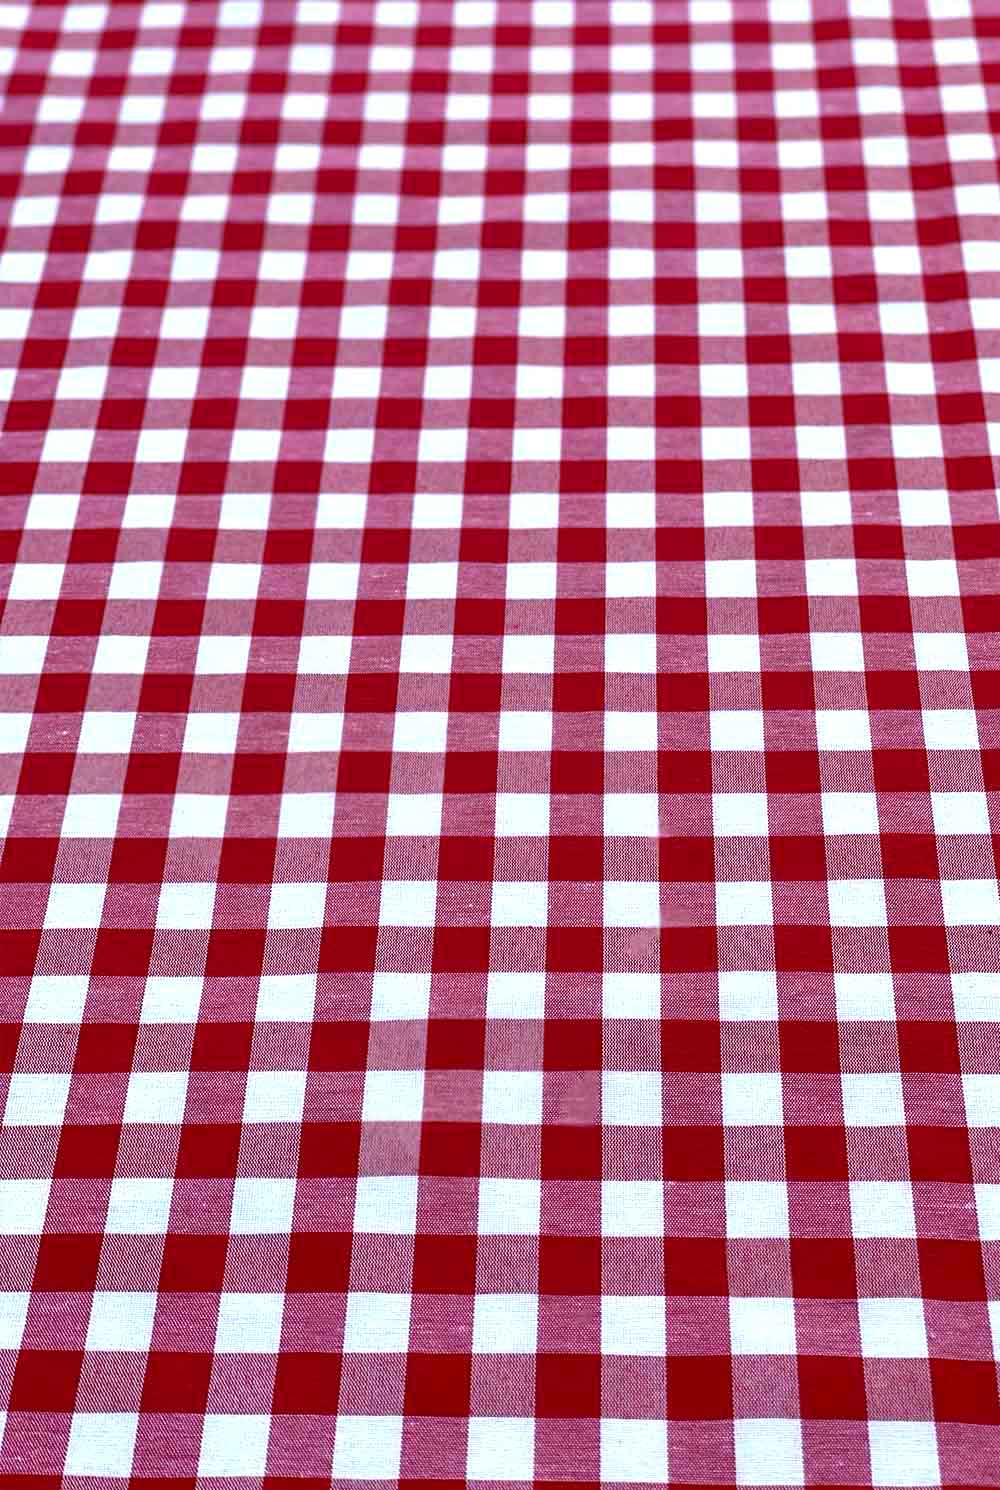 מפת שולחן משובצת אדום לבן דגם פיקניק רובי